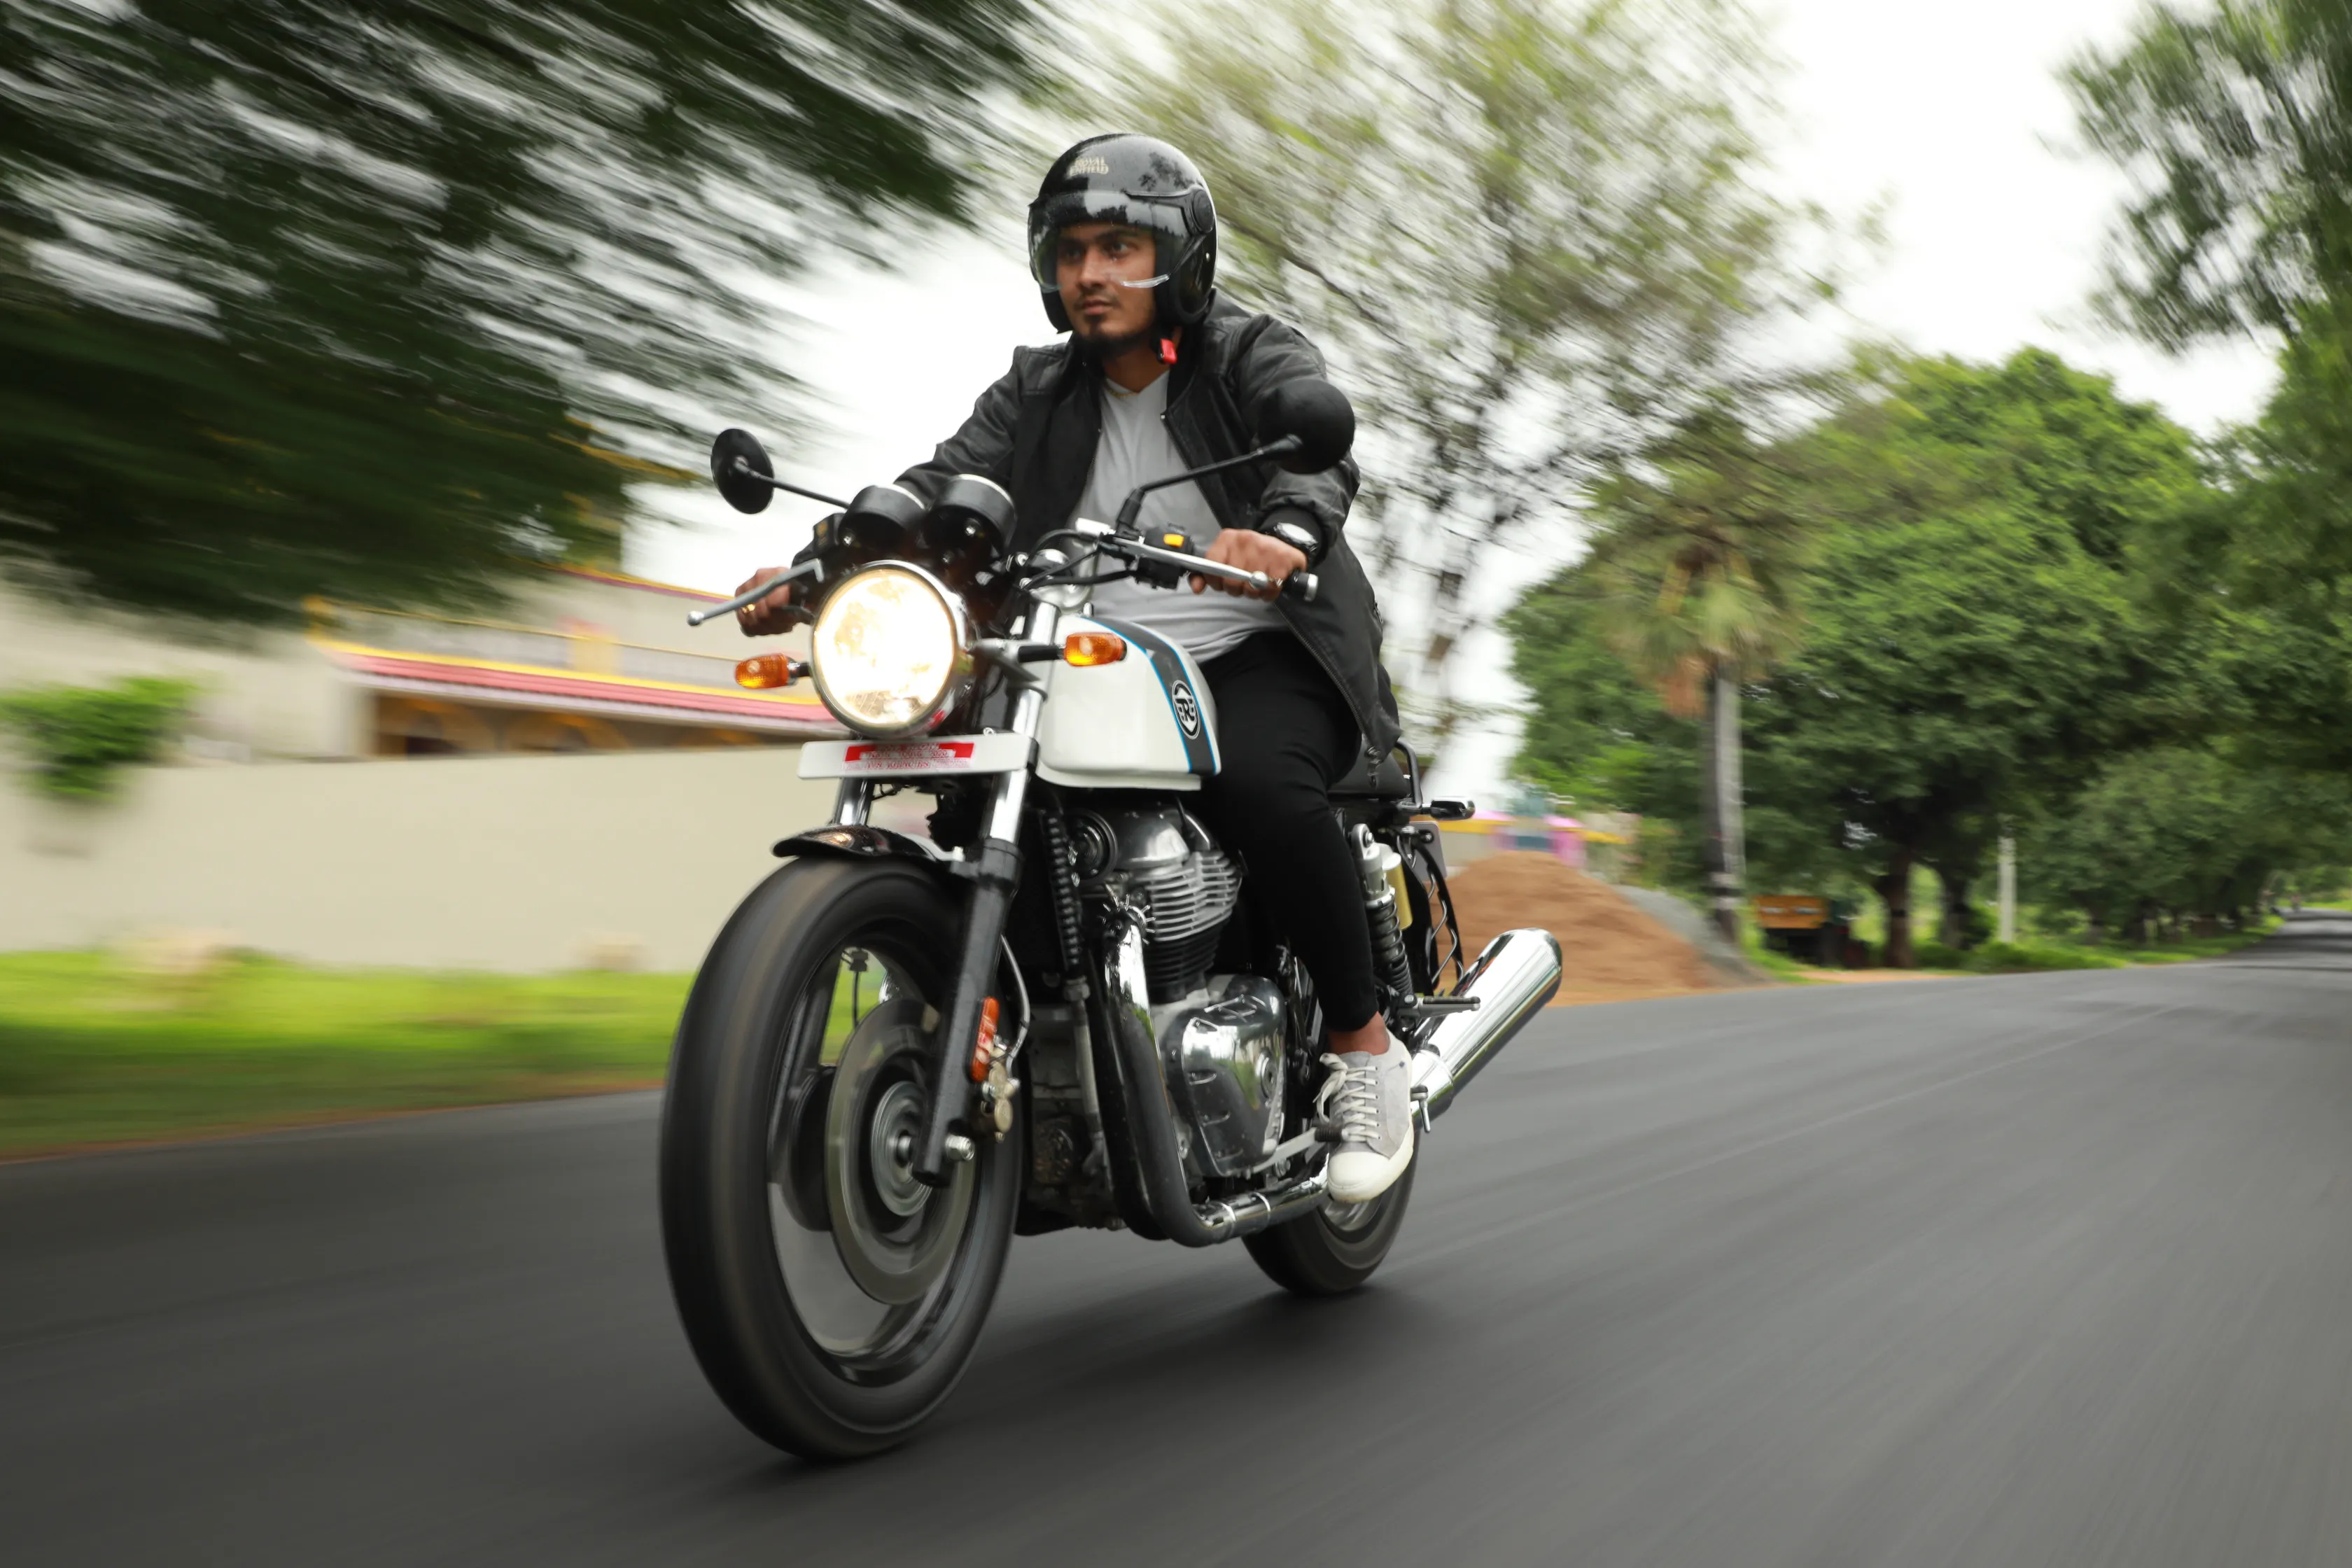 Un chauffeur de moto-taxi, portant son casque, en route pour rejoindre un client ou transporter un passager vers sa destination